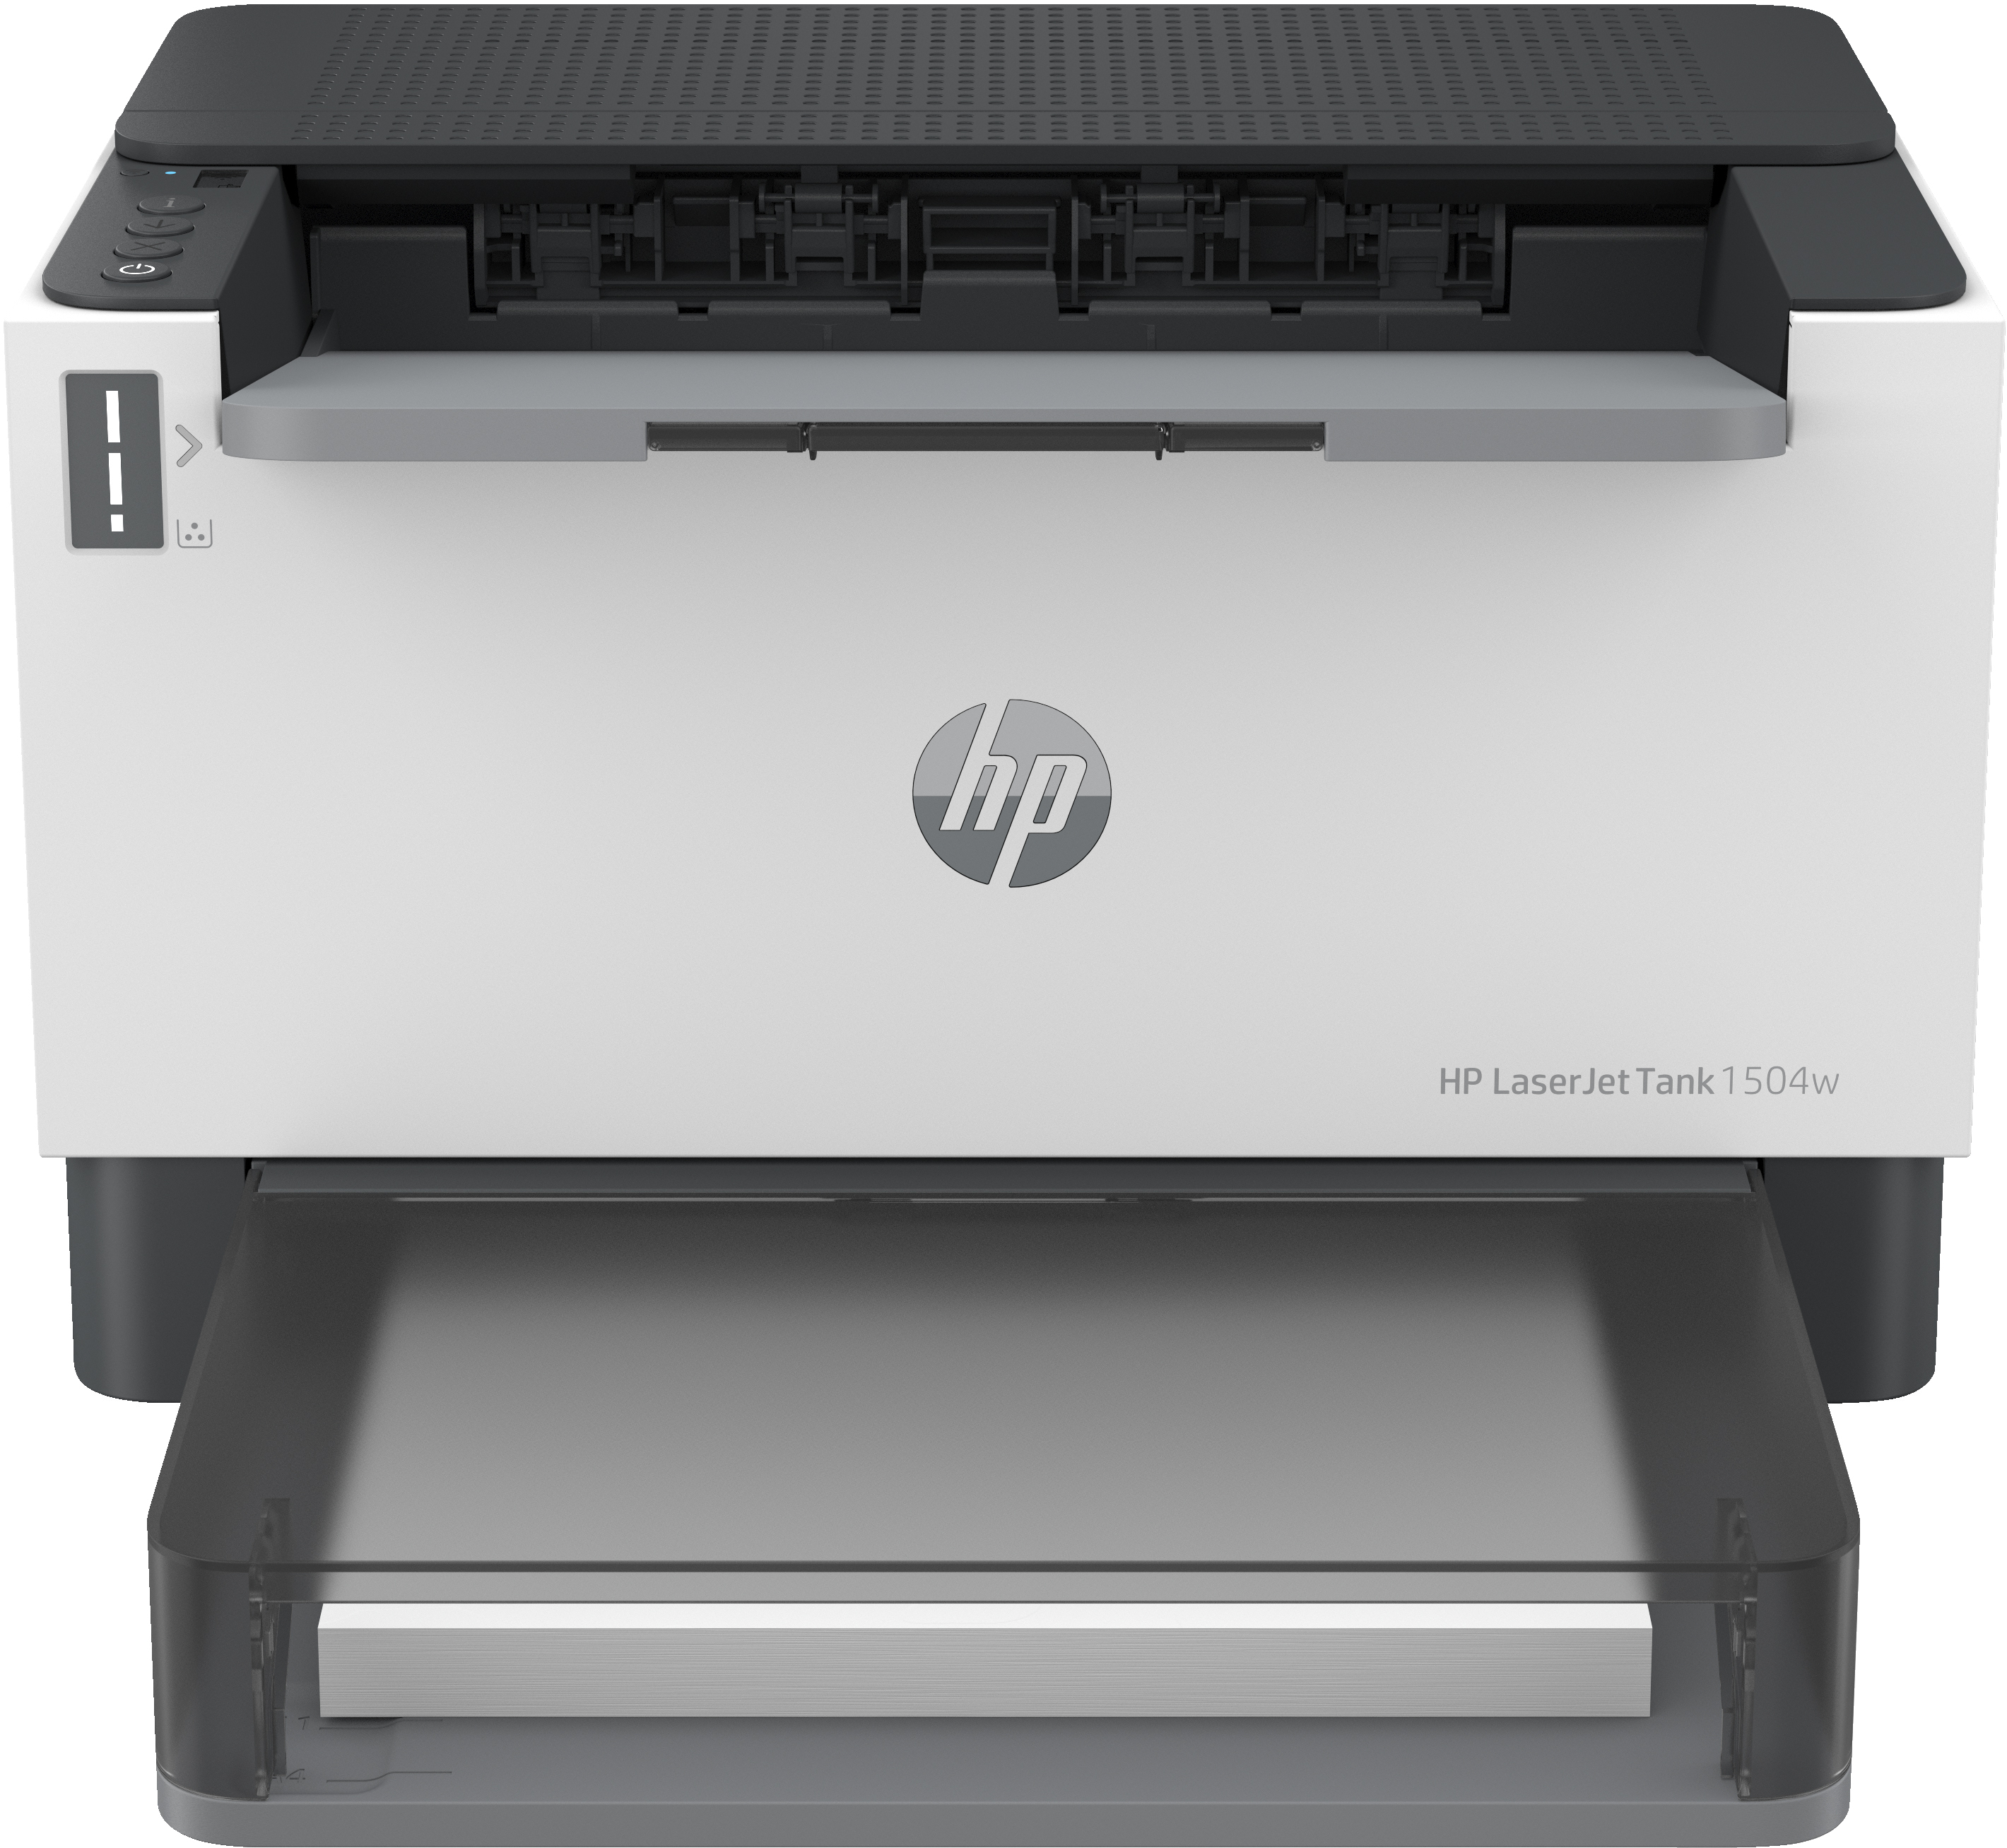 HP HP LaserJet Tank 1504w printer, Zwart-wit, Printer voor Bedrijf, Print, Compact formaat; Energiezuinig; Dual-band Wi-Fi